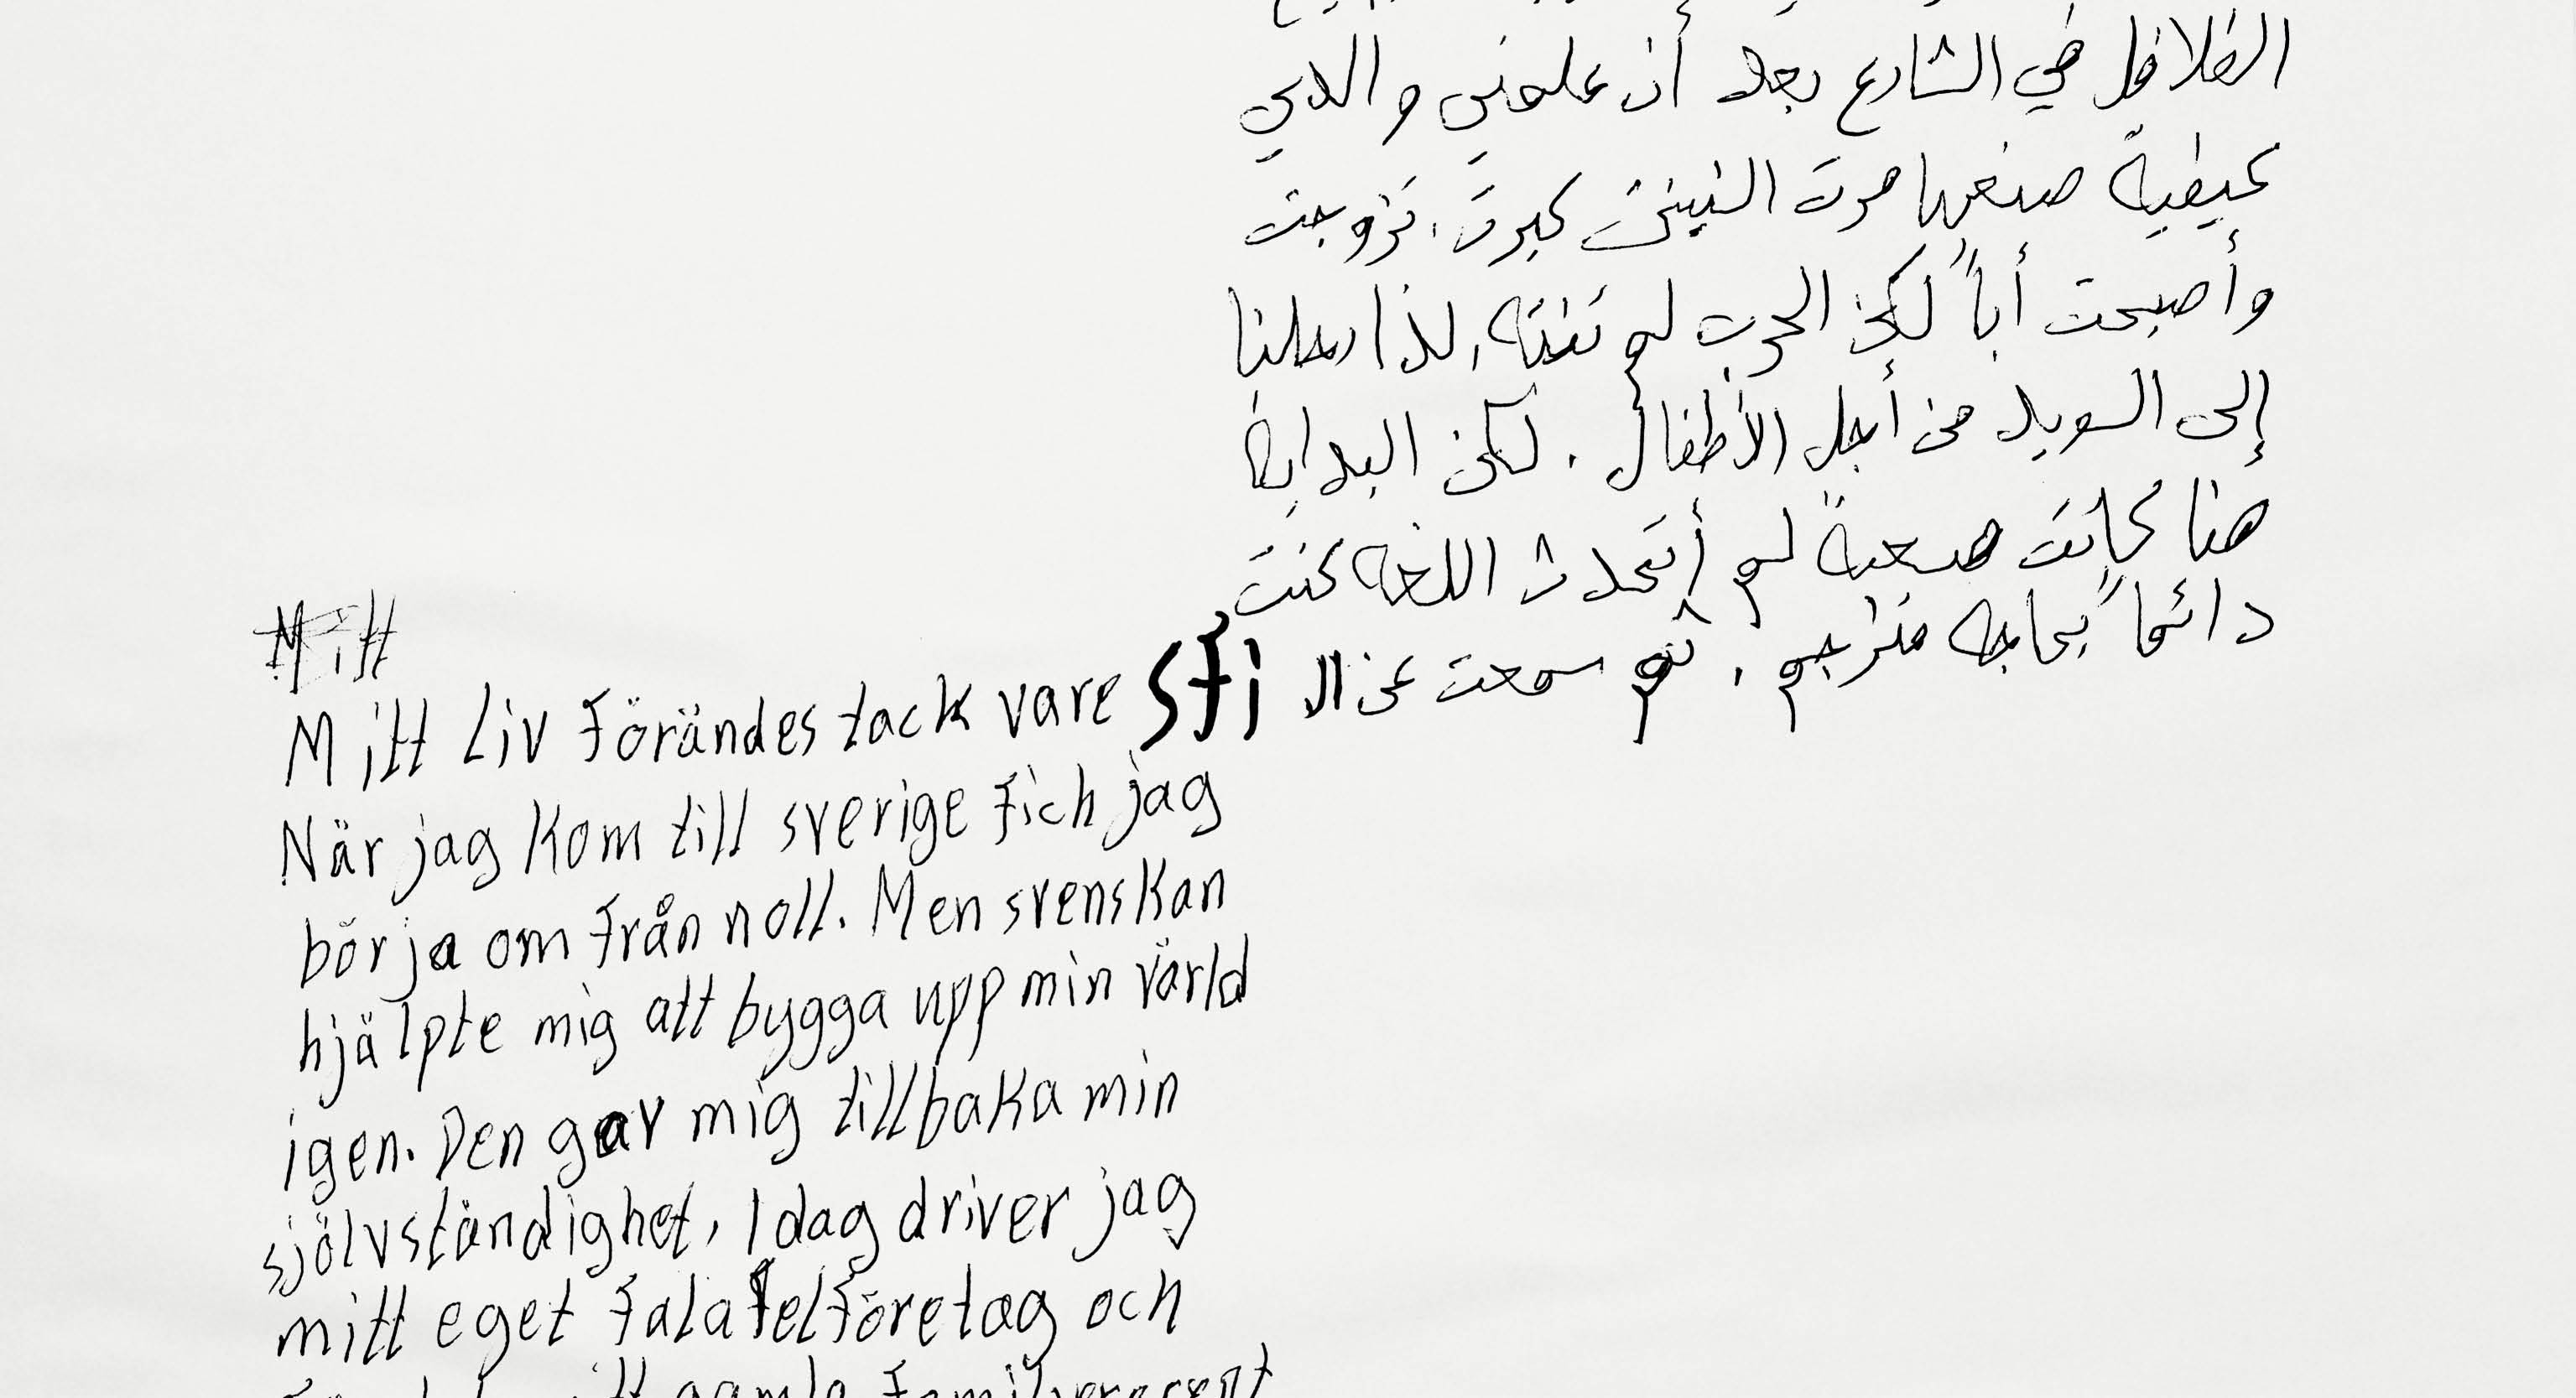 En handskriven text på arabiska möter en handskriven text på
svenska. I mitten syns ordet SFI. Vit bakgrund.